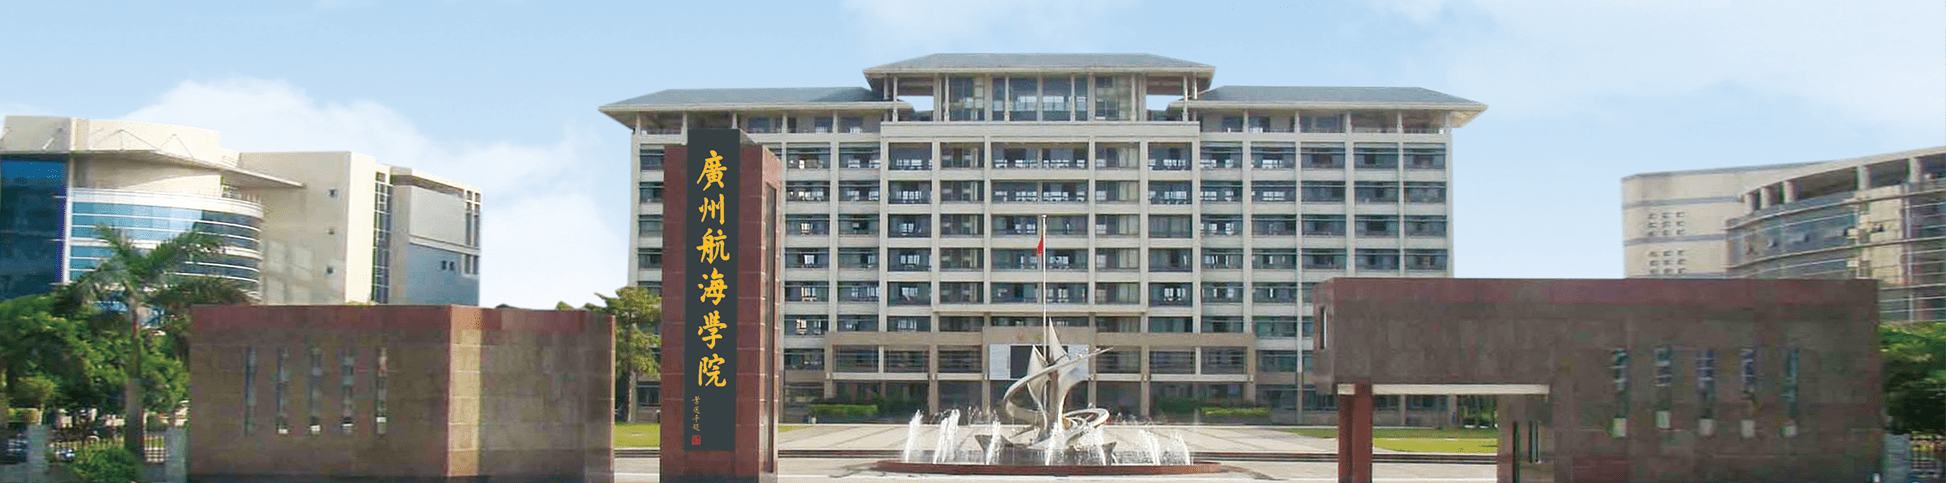 1992年,广州海运学校与武汉水运工程学院广州航海分部合并组建为广州